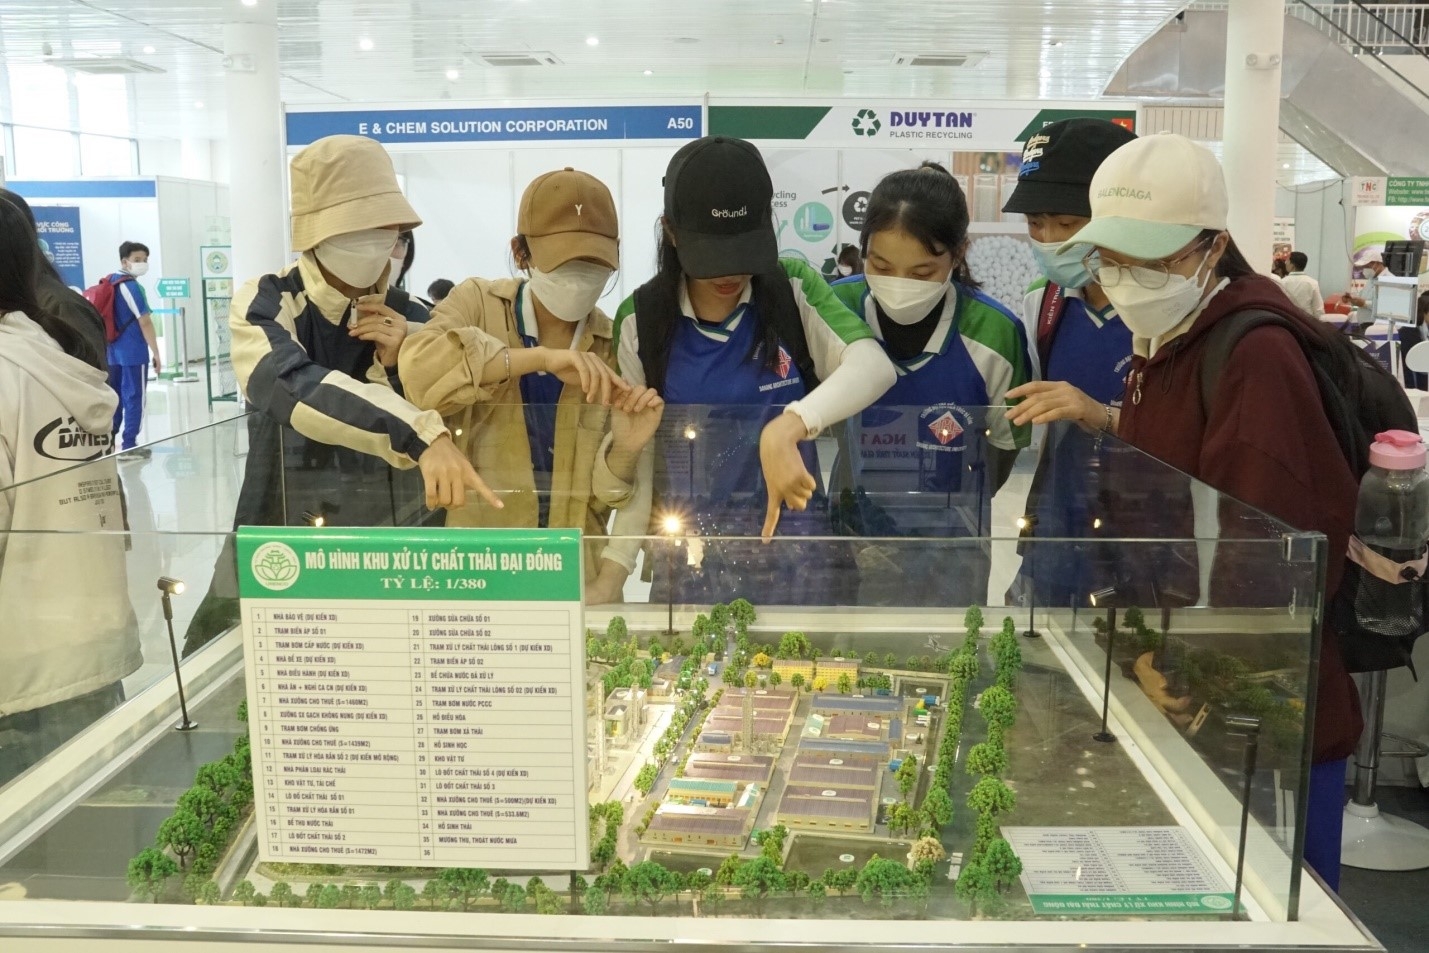 Hội thảo - Triển lãm quốc tế về Giải pháp và Công nghệ xử lý chất thải đô thị tại Việt Nam